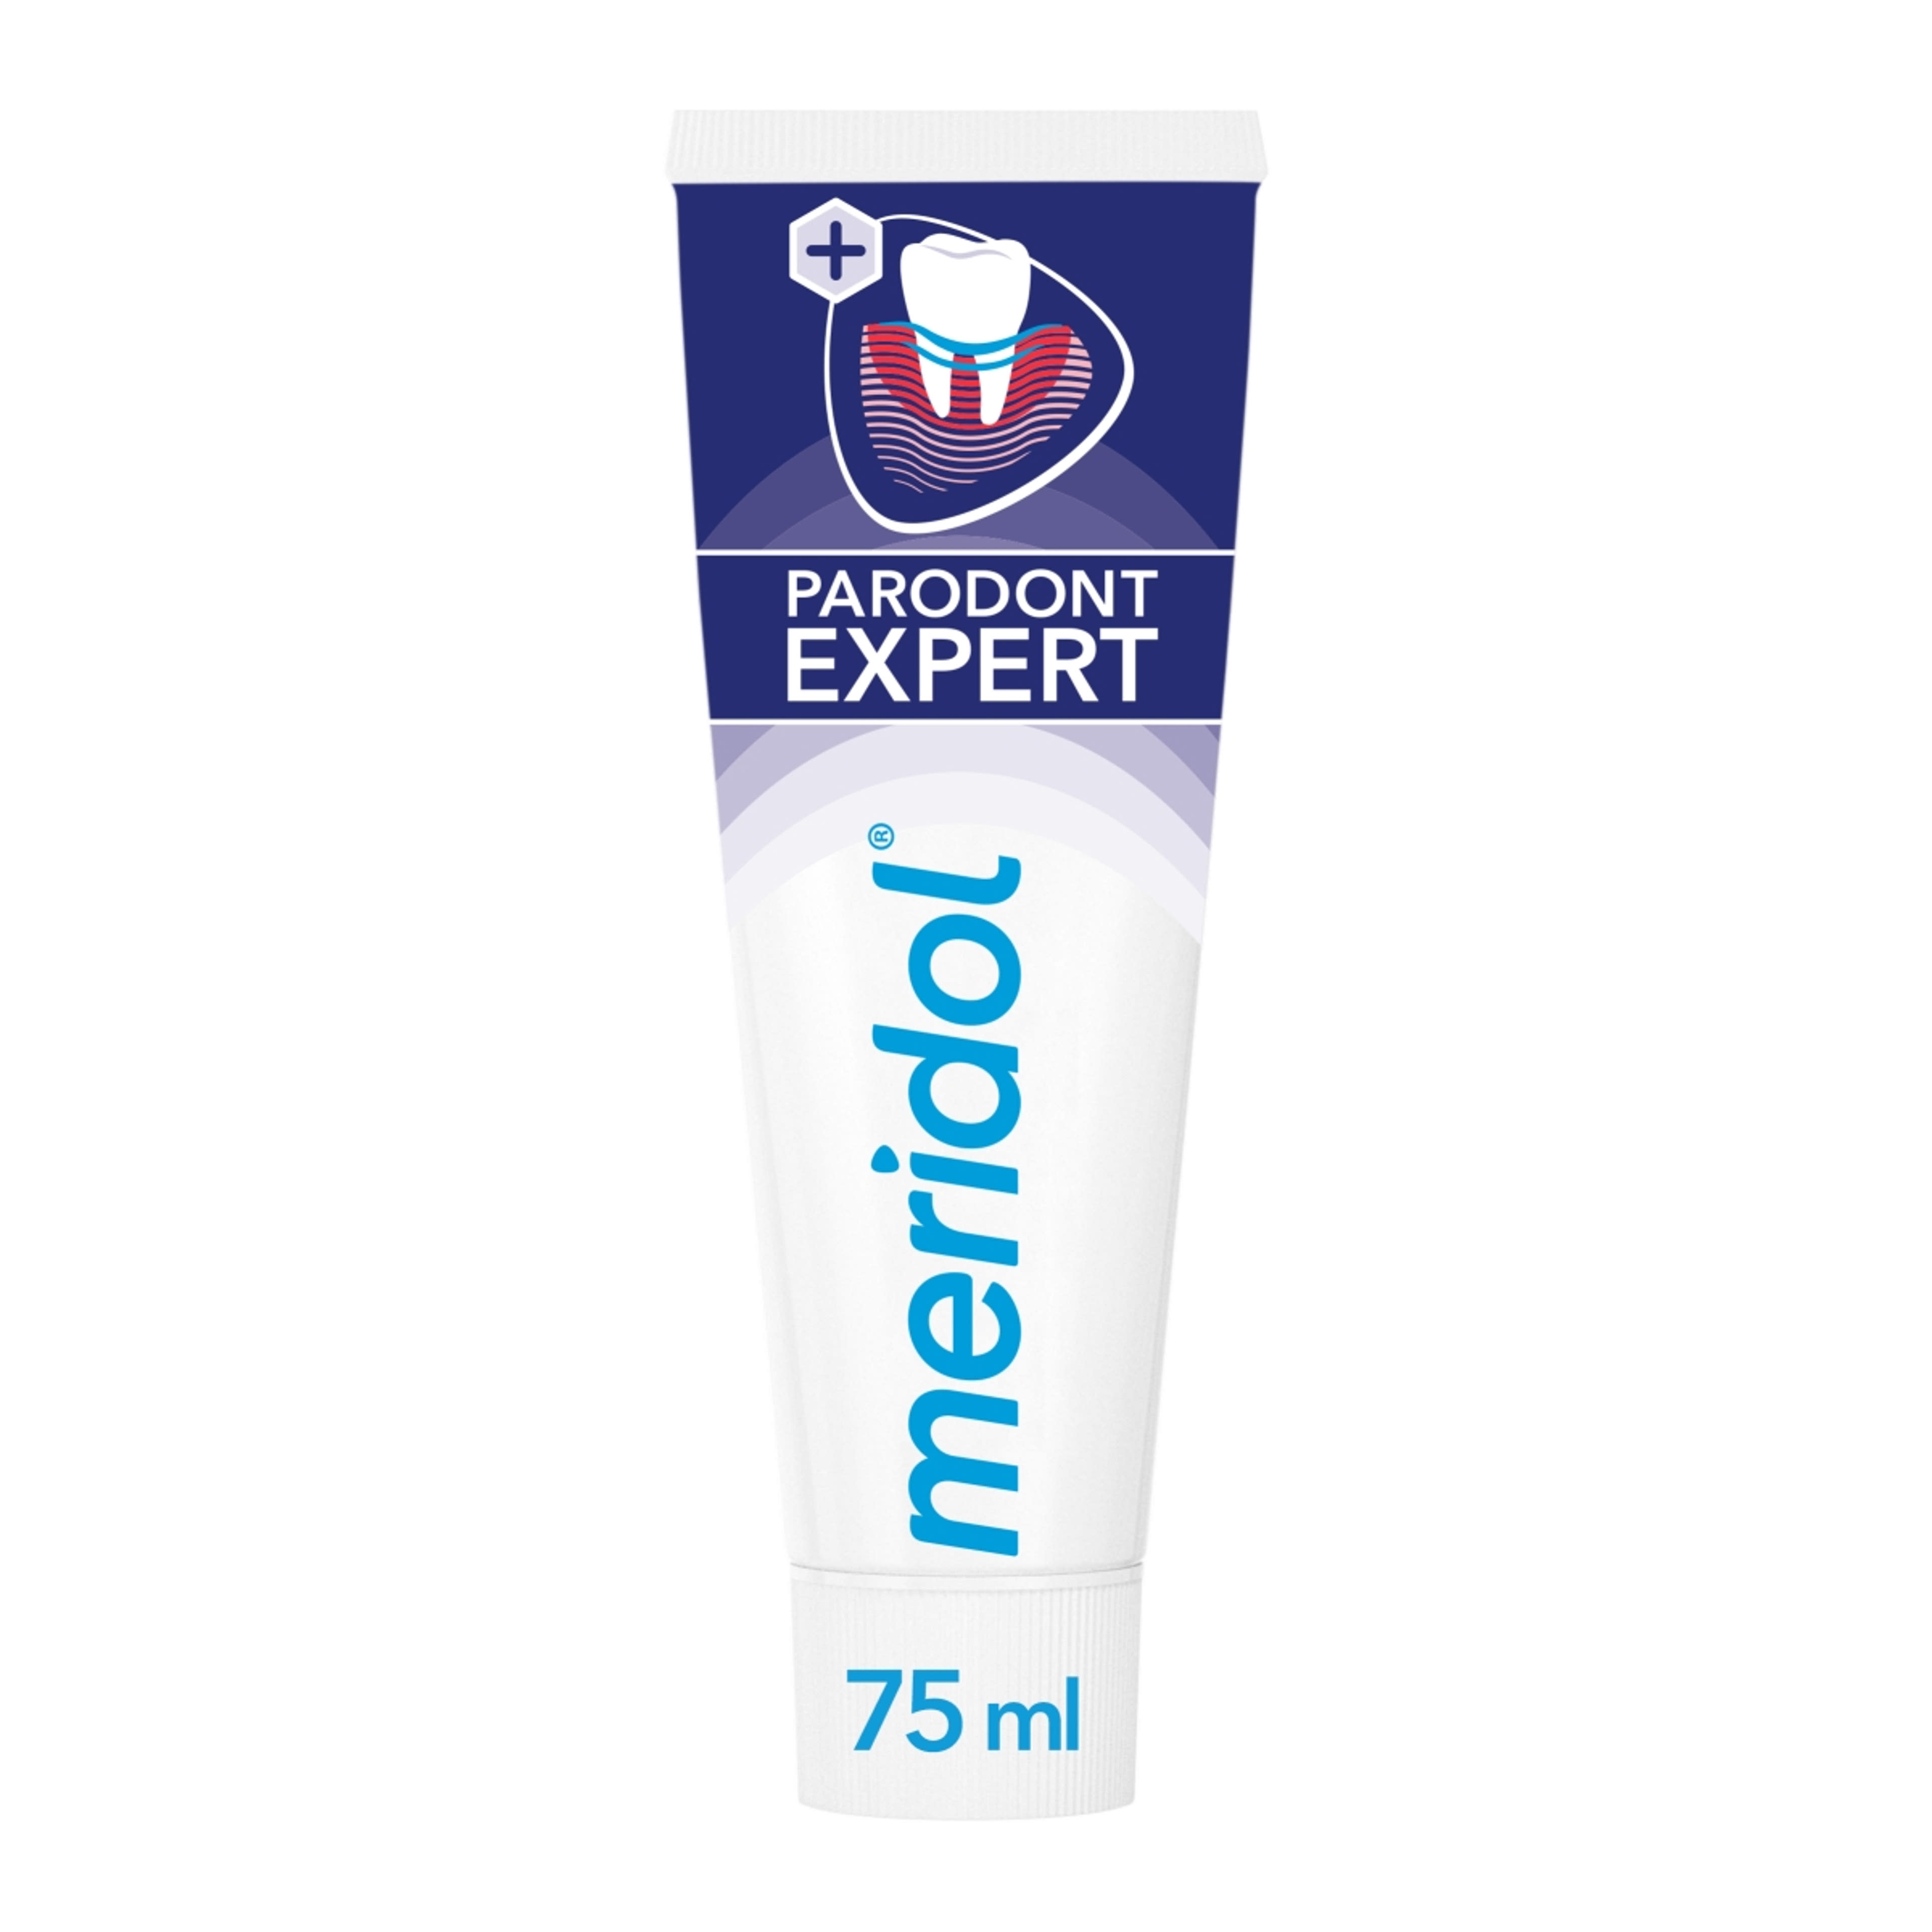 Meridol Paradont Expect fogkrém - 75 ml-9